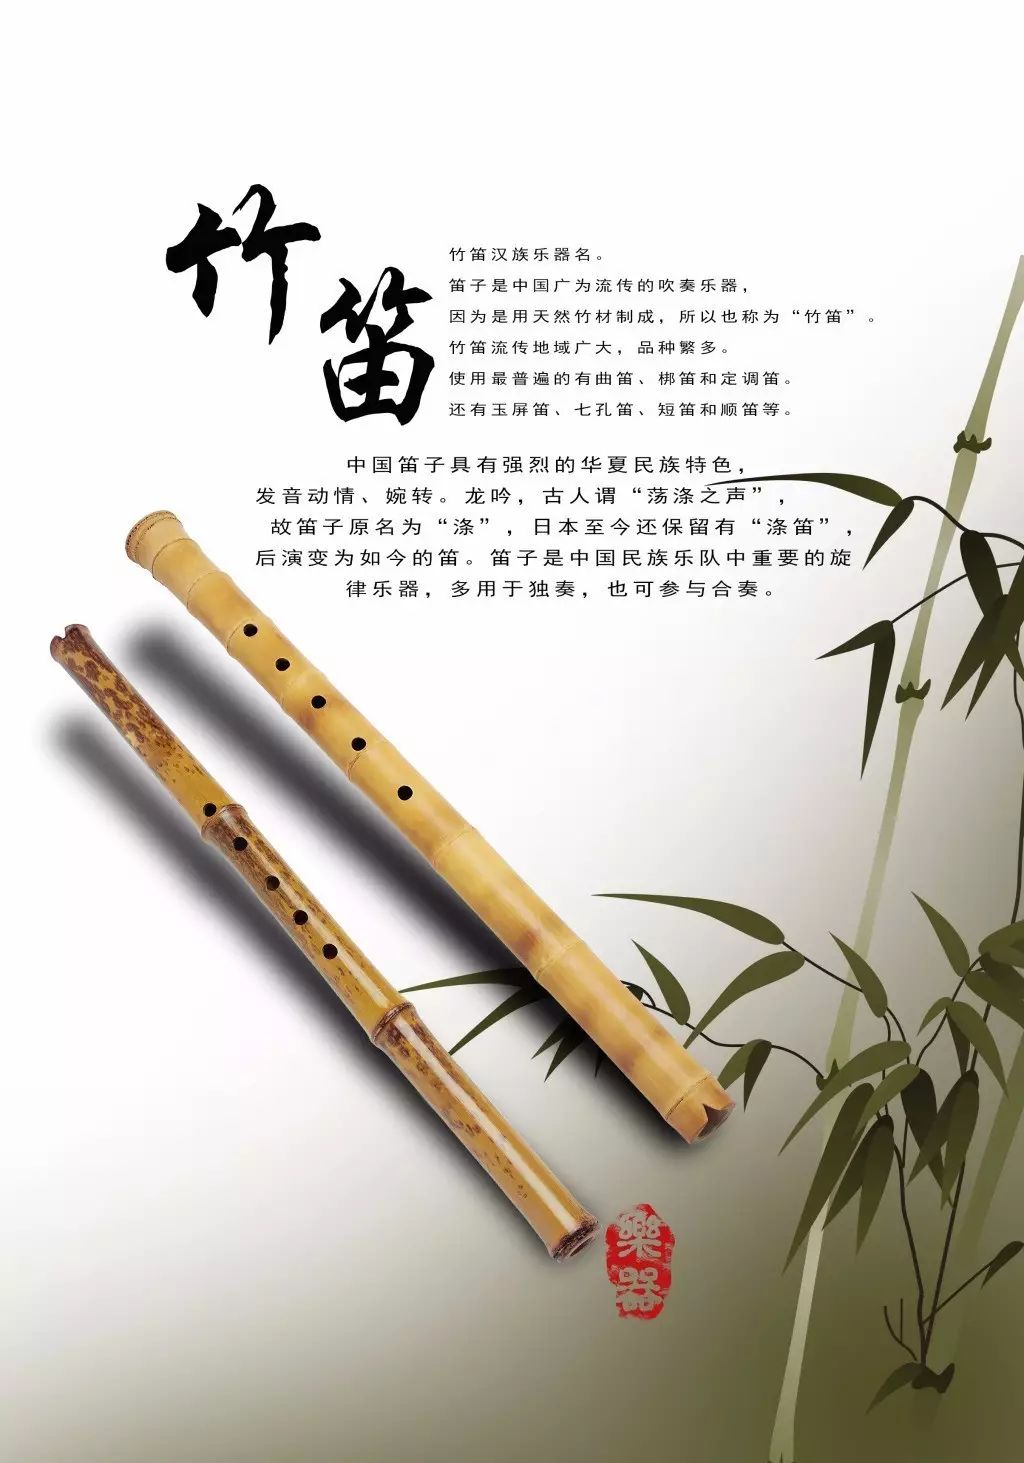 文物介绍——世界上最早的乐器贾湖骨笛